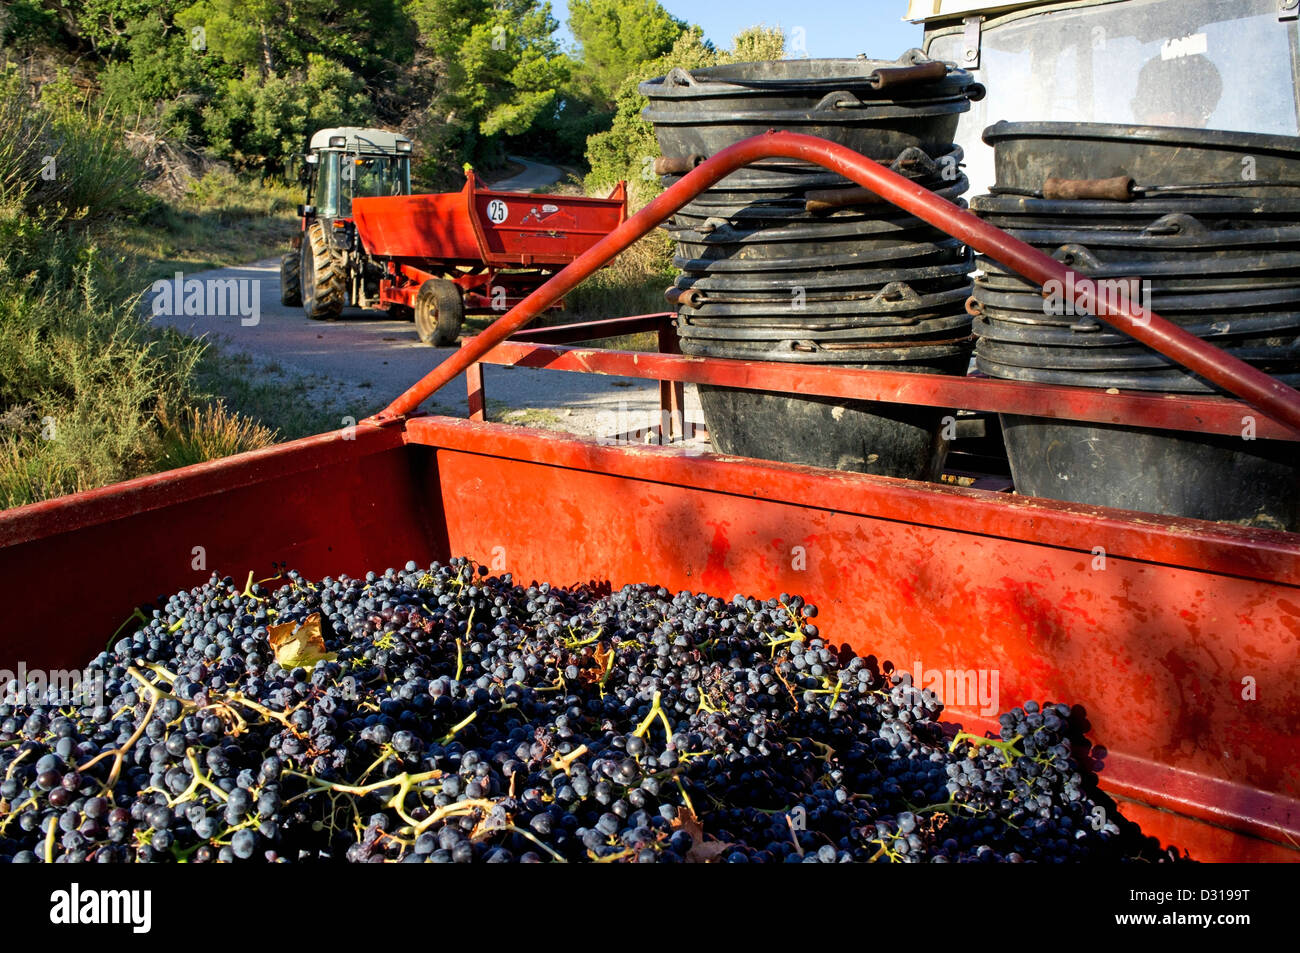 Vignoble, France - raisins noirs récoltés en remorque, Beaumes de Venise, vallée du Rhône, France Banque D'Images